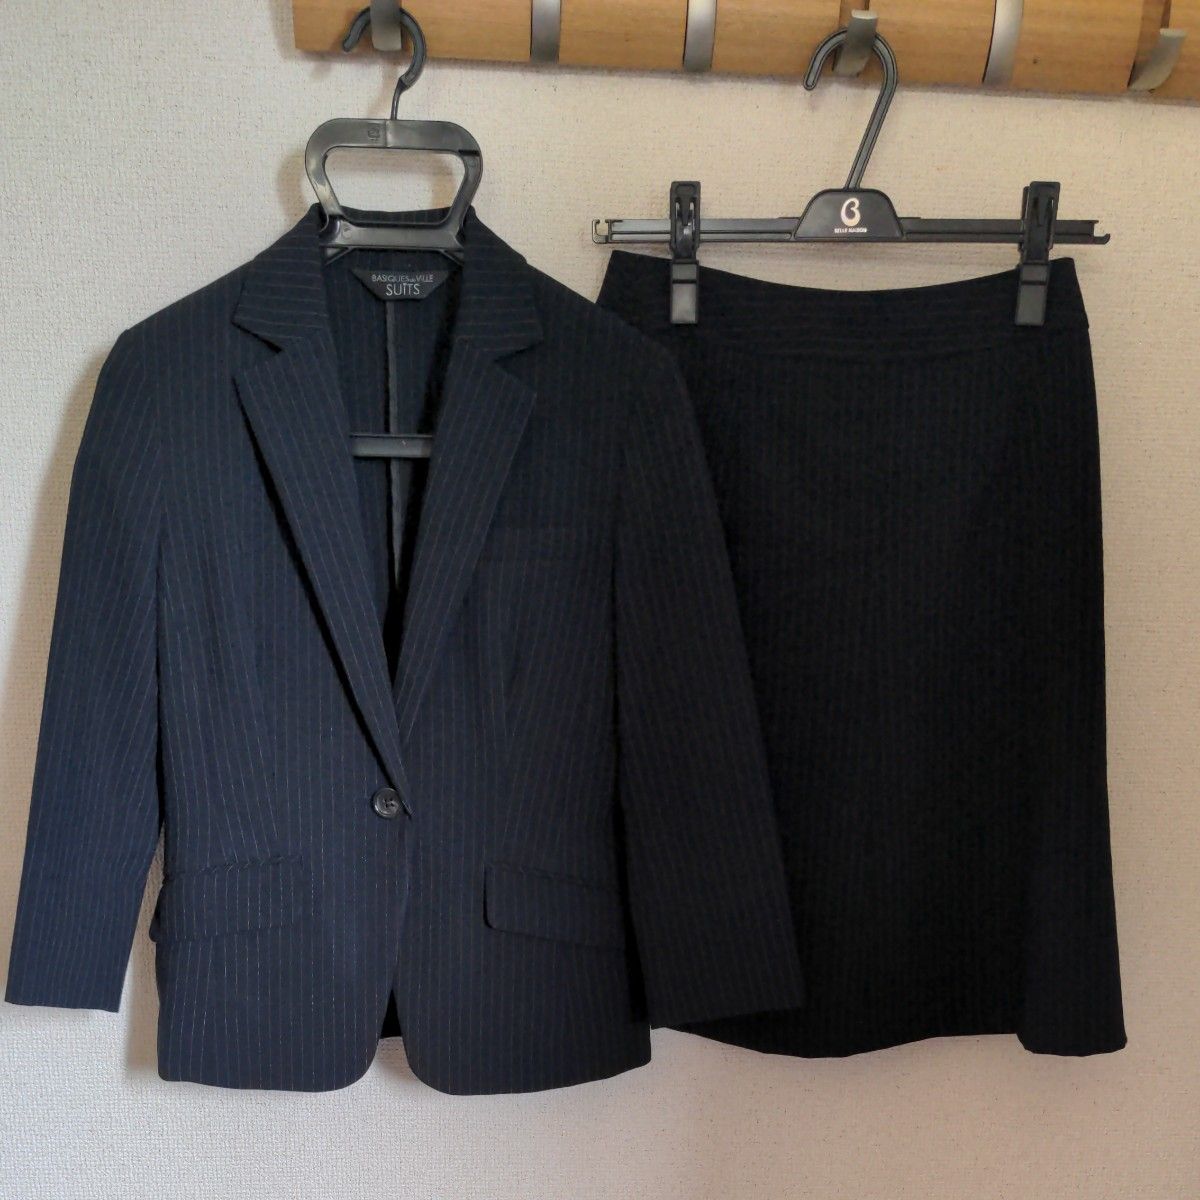 5号　七部袖スーツ+7号セットアップスーツの2点セット　写真2枚目変更済